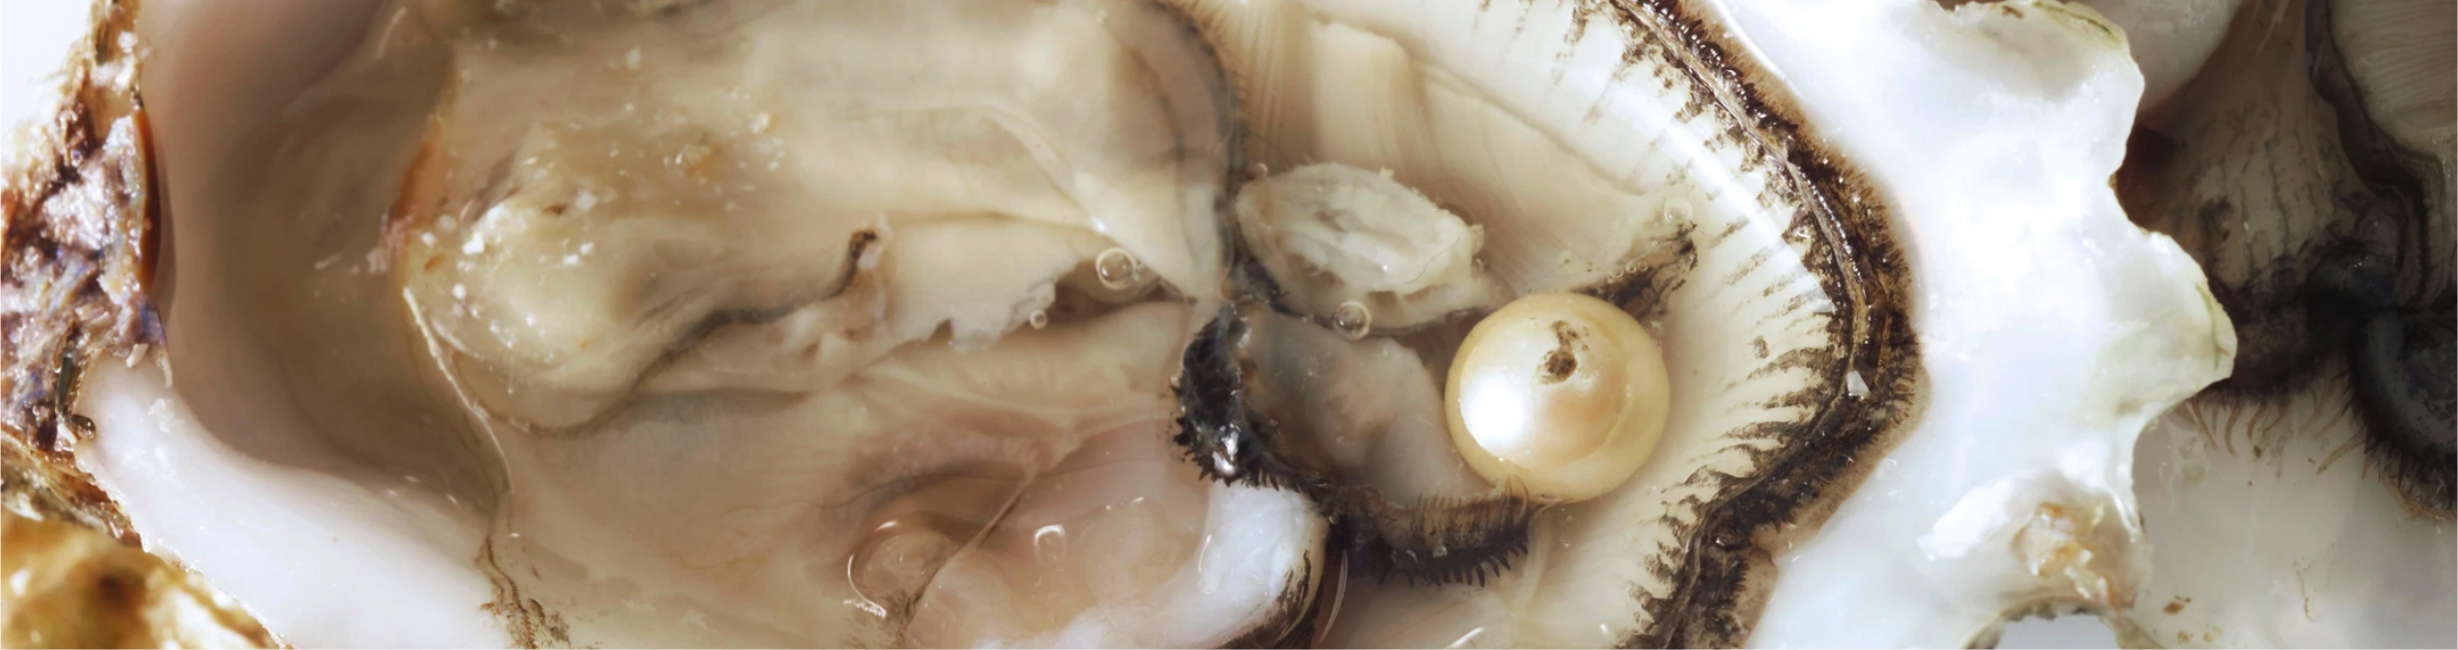 Intérieur d'un mollusque perlier